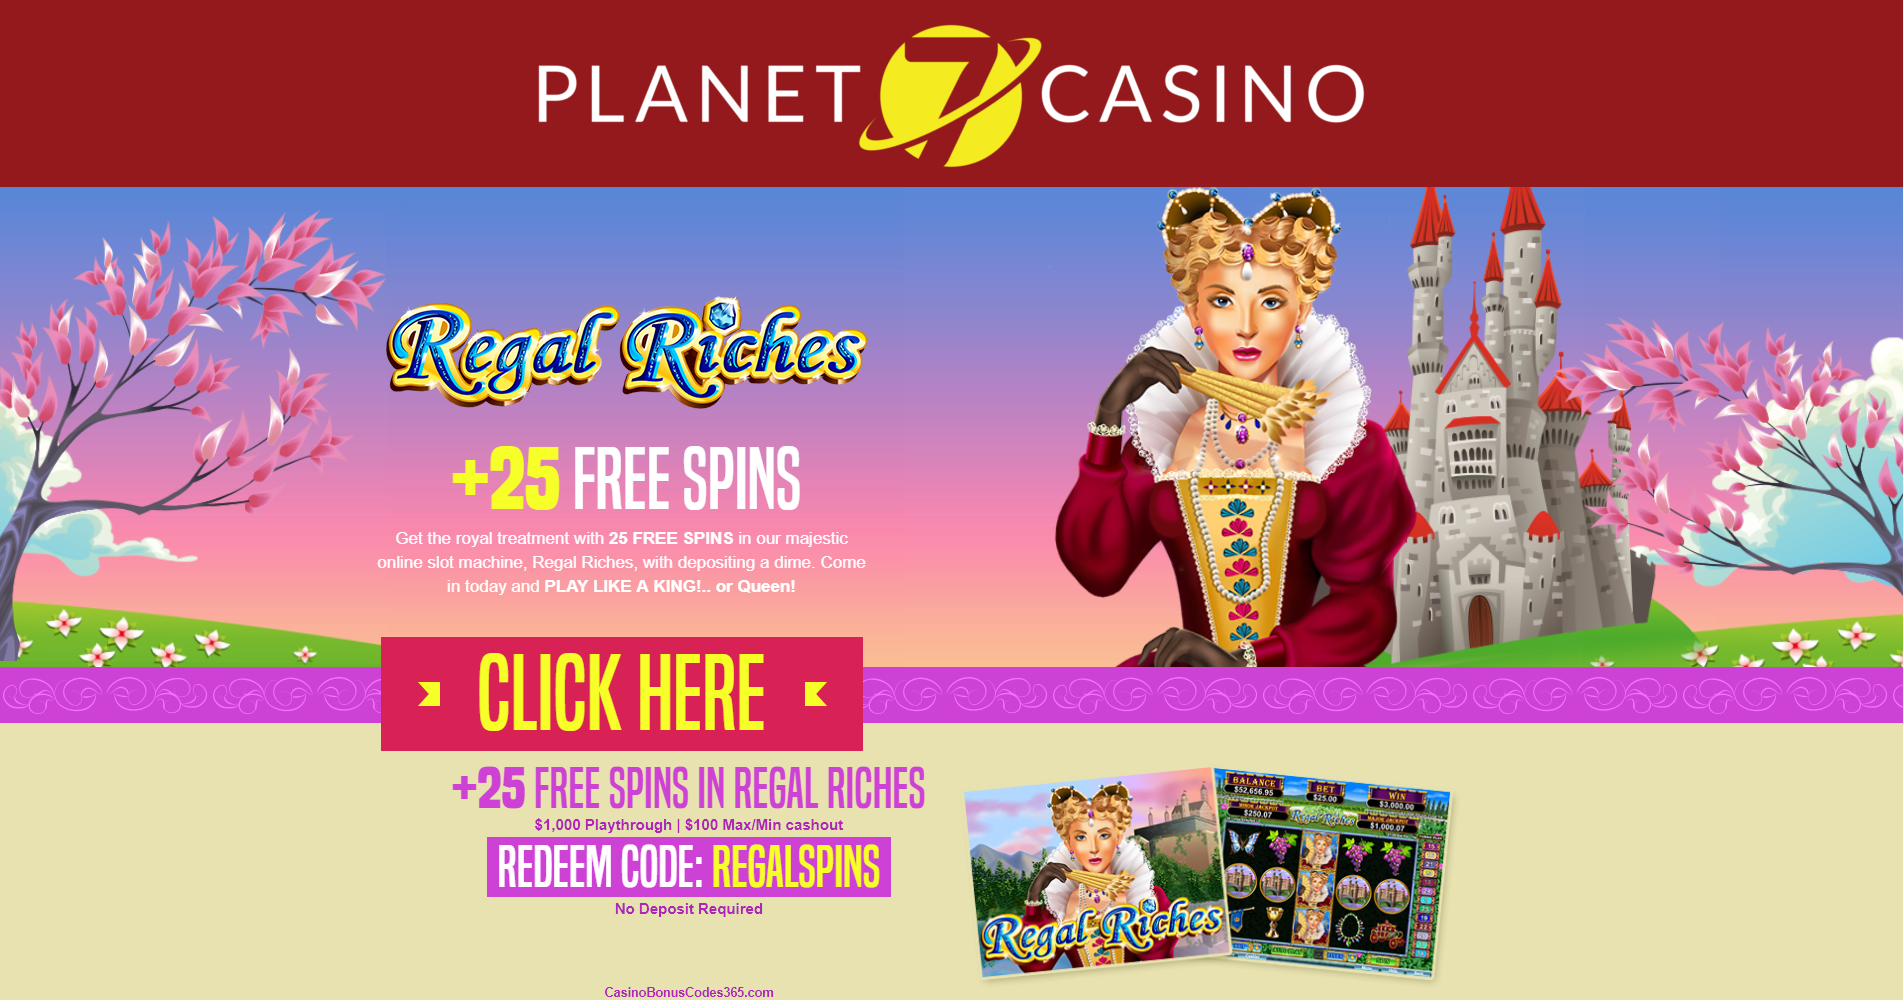 Planet 7 Casino $200 No Deposit Bonus Codes